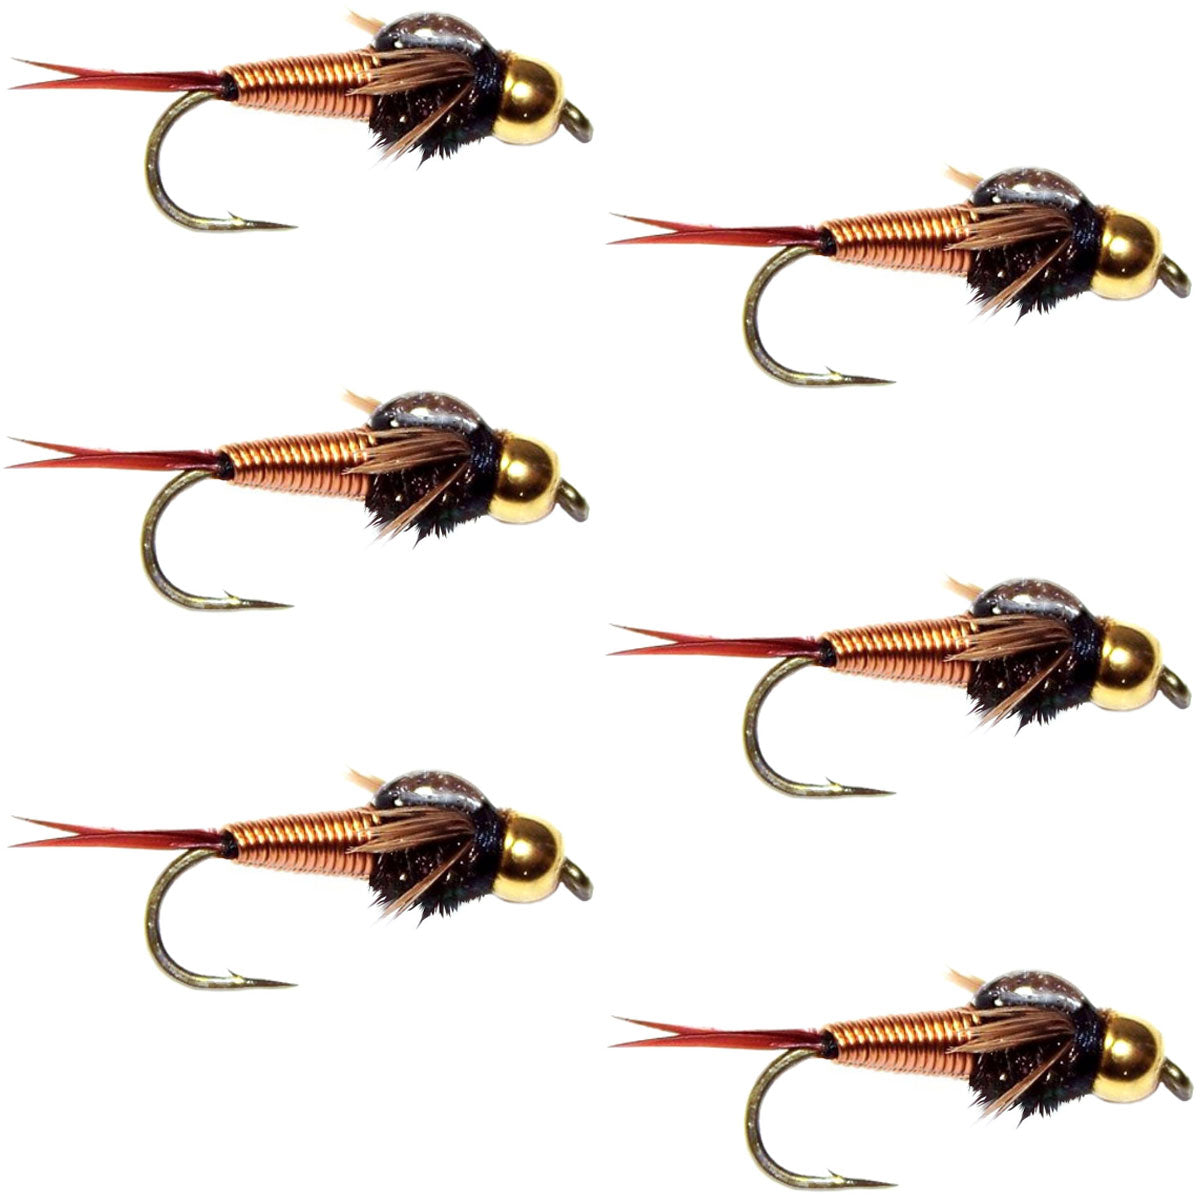 Bead Head Copper John Nymph Fly Fishing Flies - Set of 6 Flies Hook Size 10